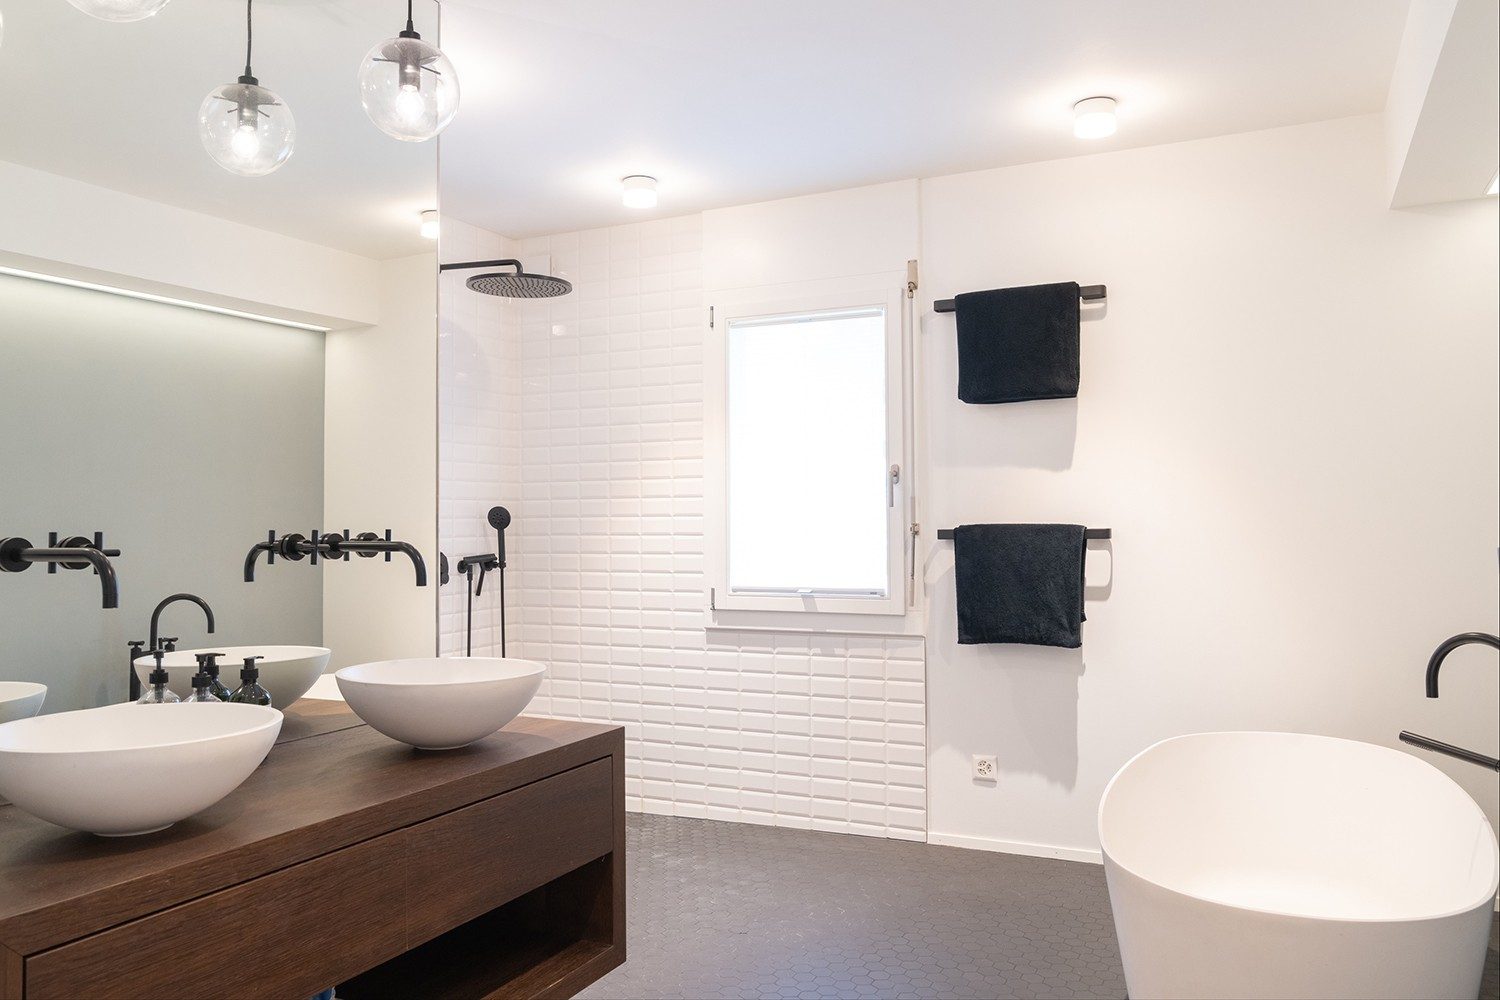 Das Badezimmer ist im schlichten Weiss und Schwarz gehalten, mit einem schönen Holzdetail